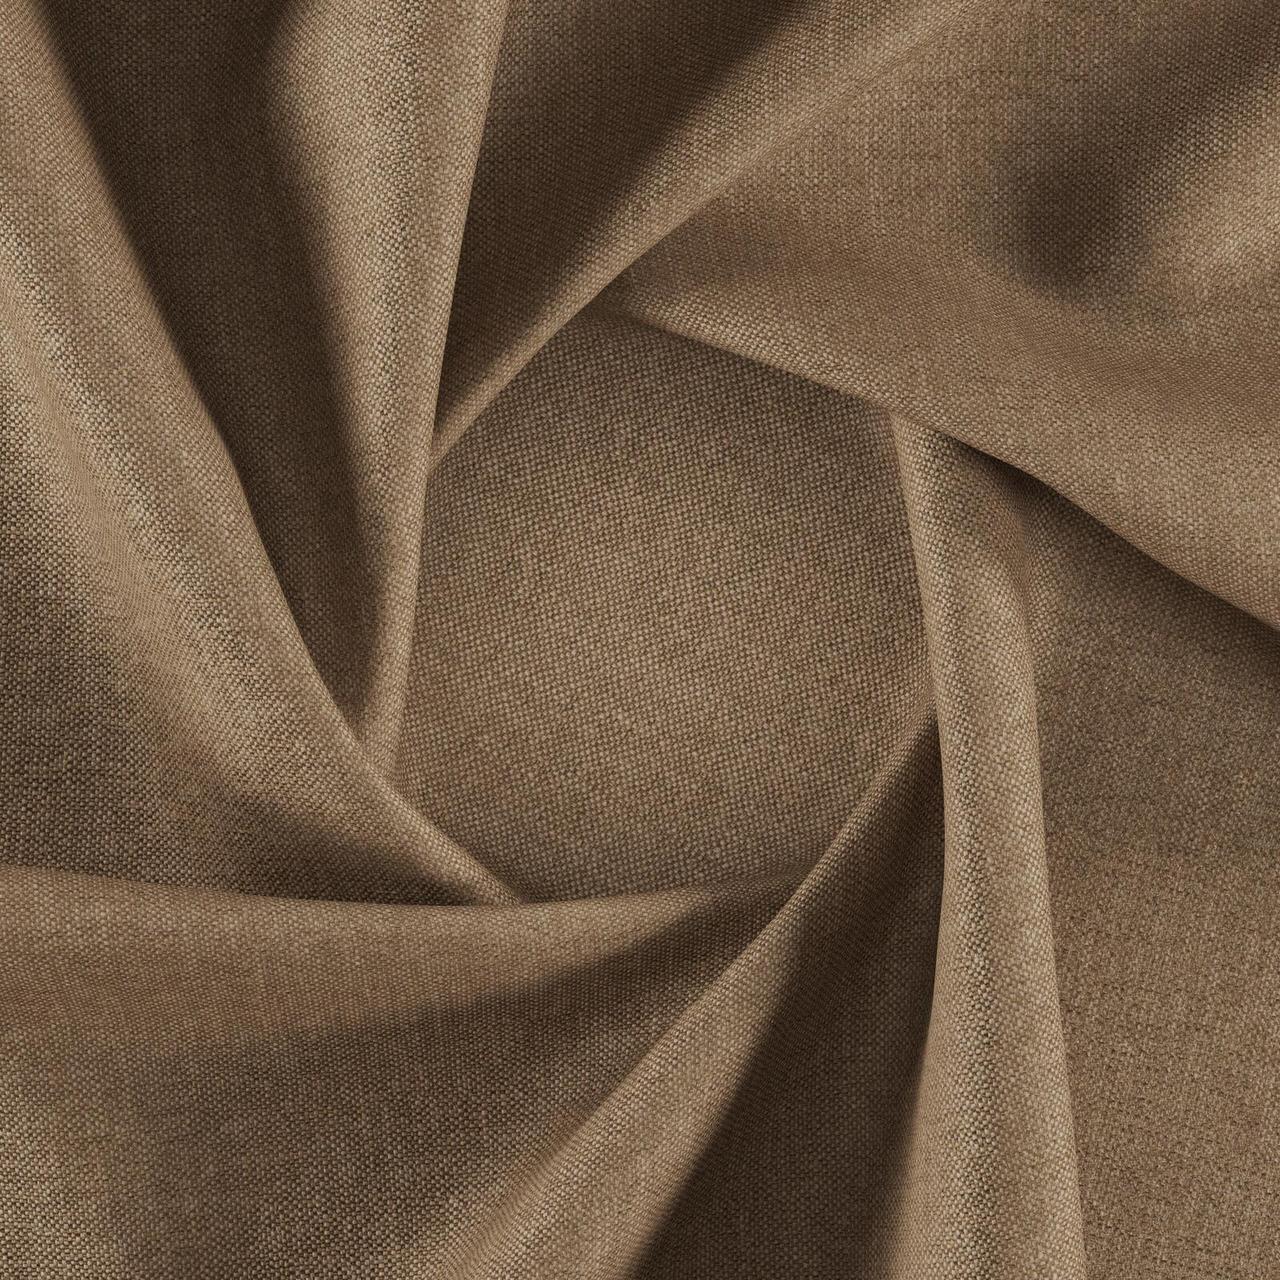 Тканина для перетяжки м'яких меблів шеніл Перфекто (Perfecto) світло-коричневого кольору